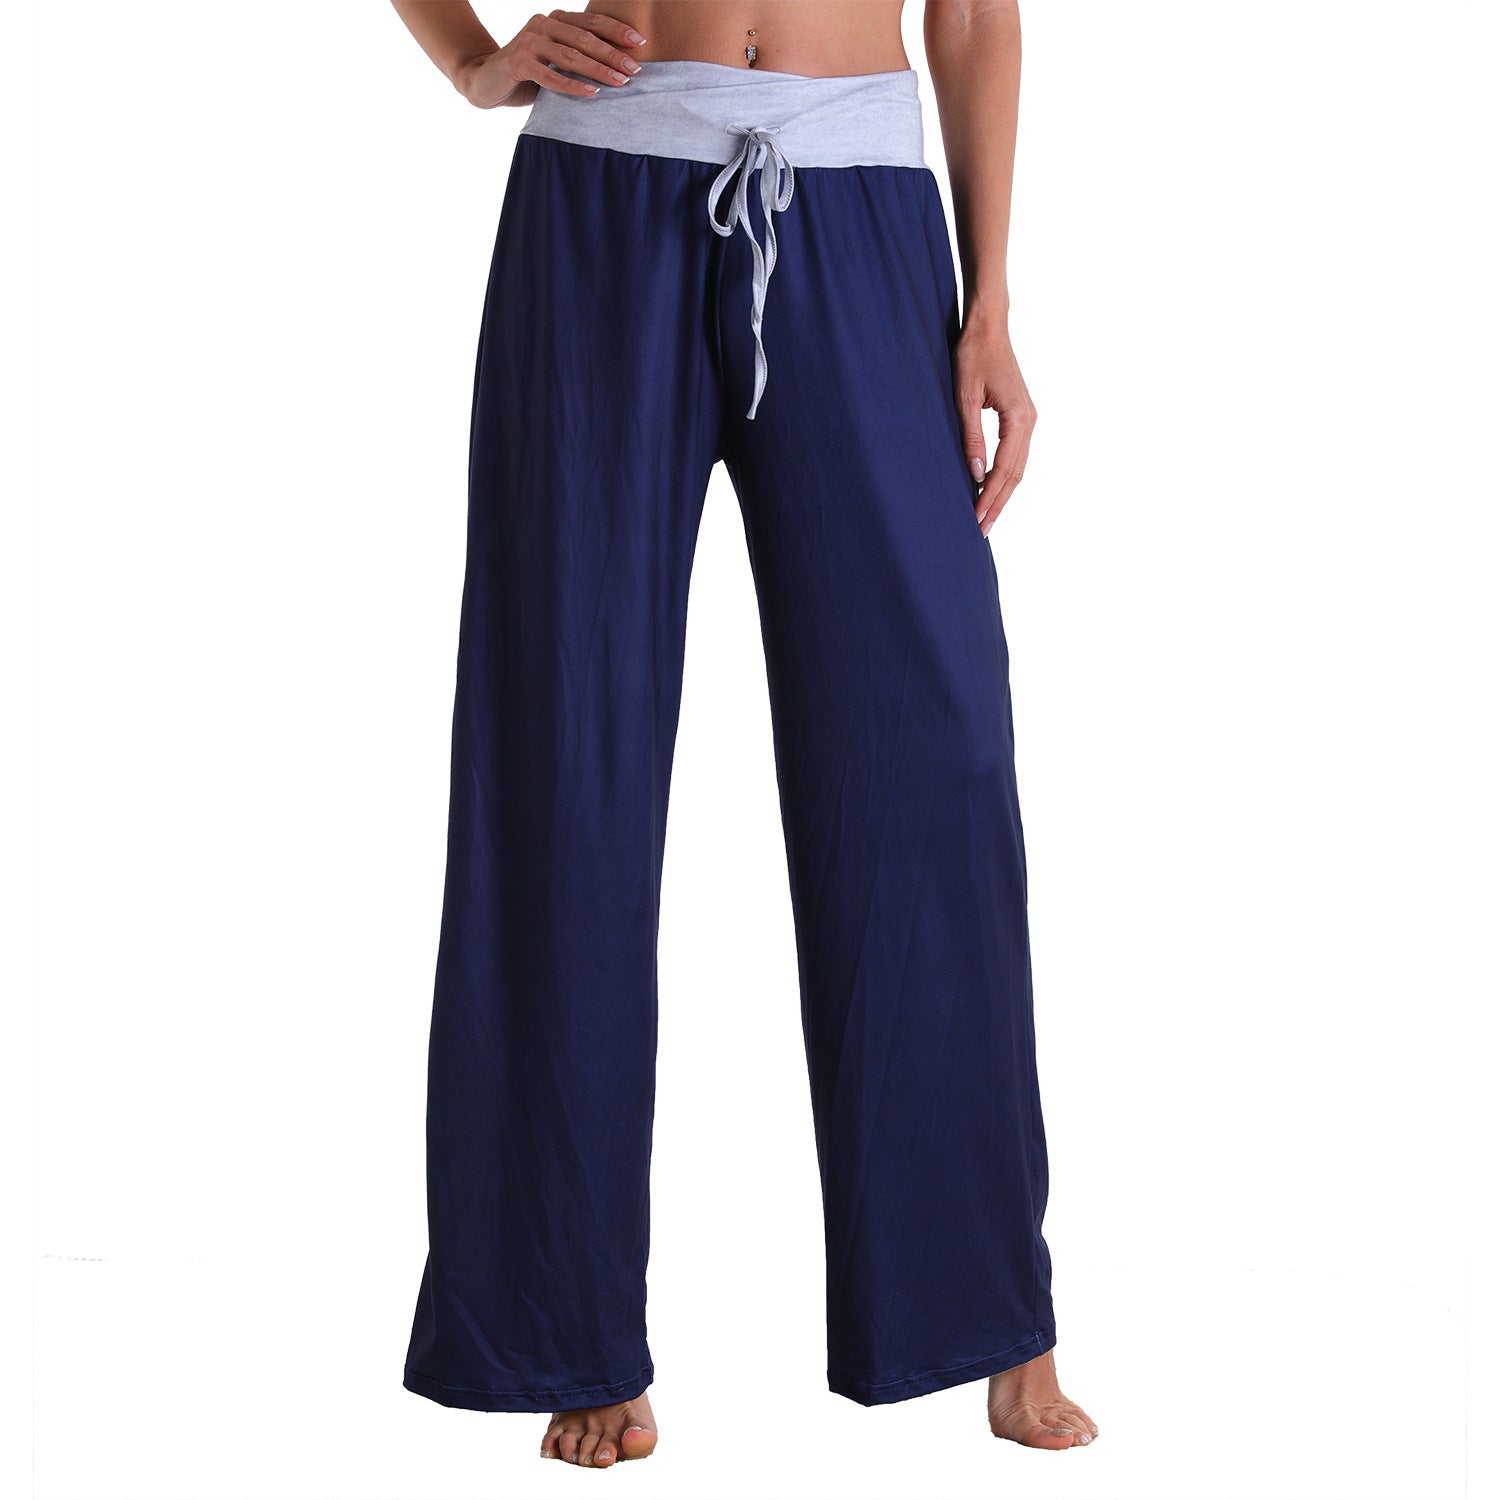 Casual Bandage Solid Loose Home Wear Pajamas Pants-Pajamas-2014-S-Free Shipping at meselling99